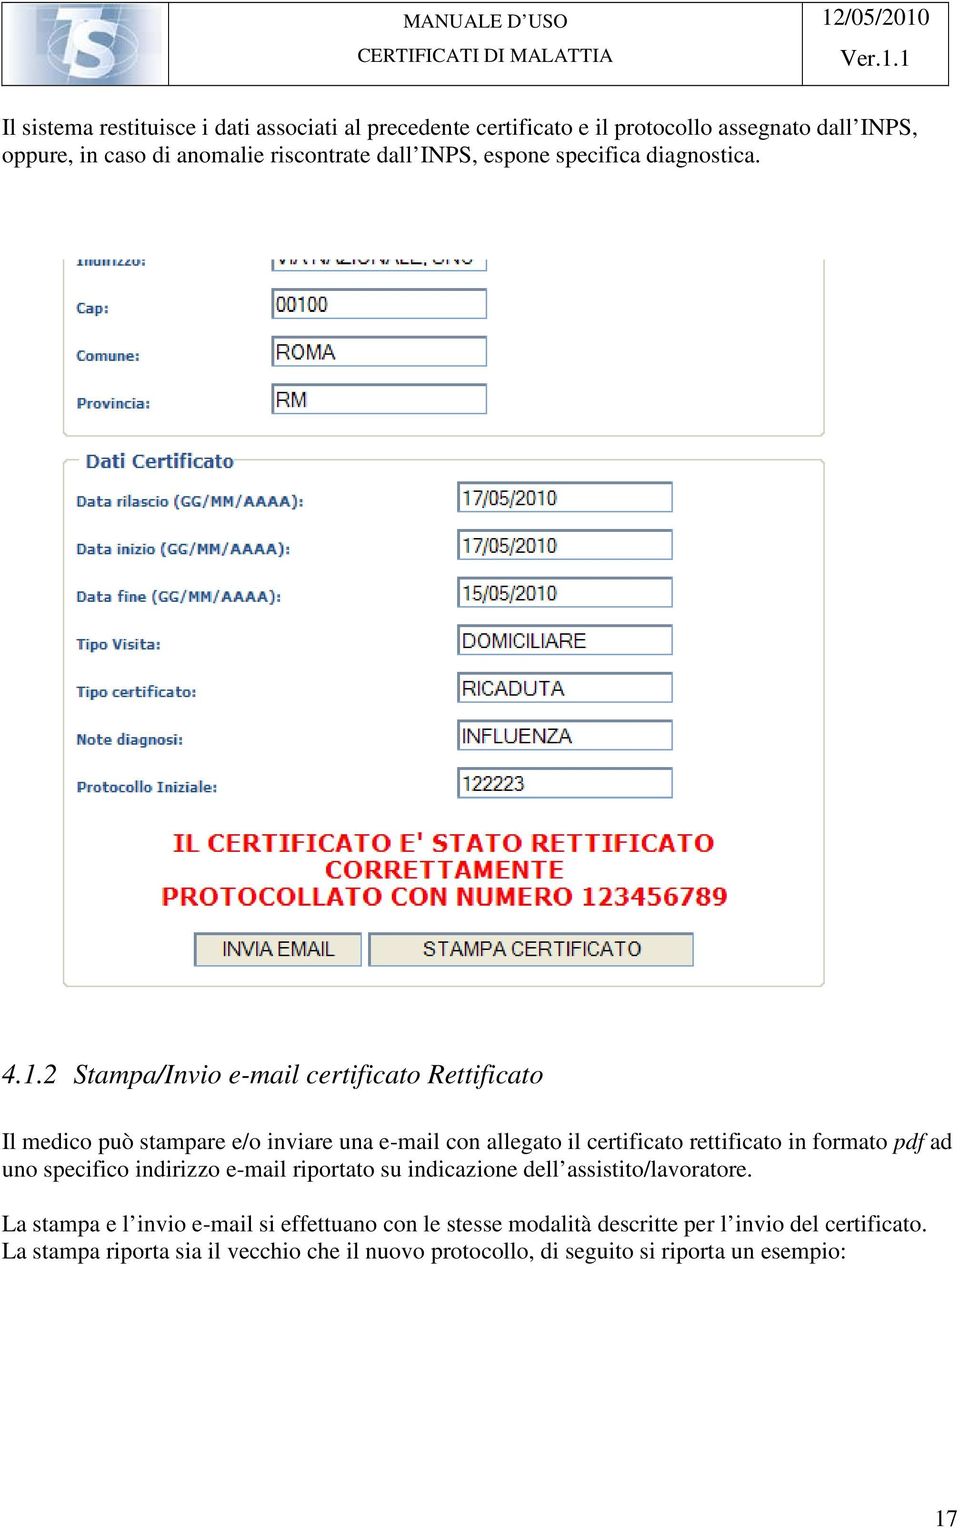 2 Stampa/Invio e-mail certificato Rettificato Il medico può stampare e/o inviare una e-mail con allegato il certificato rettificato in formato pdf ad uno